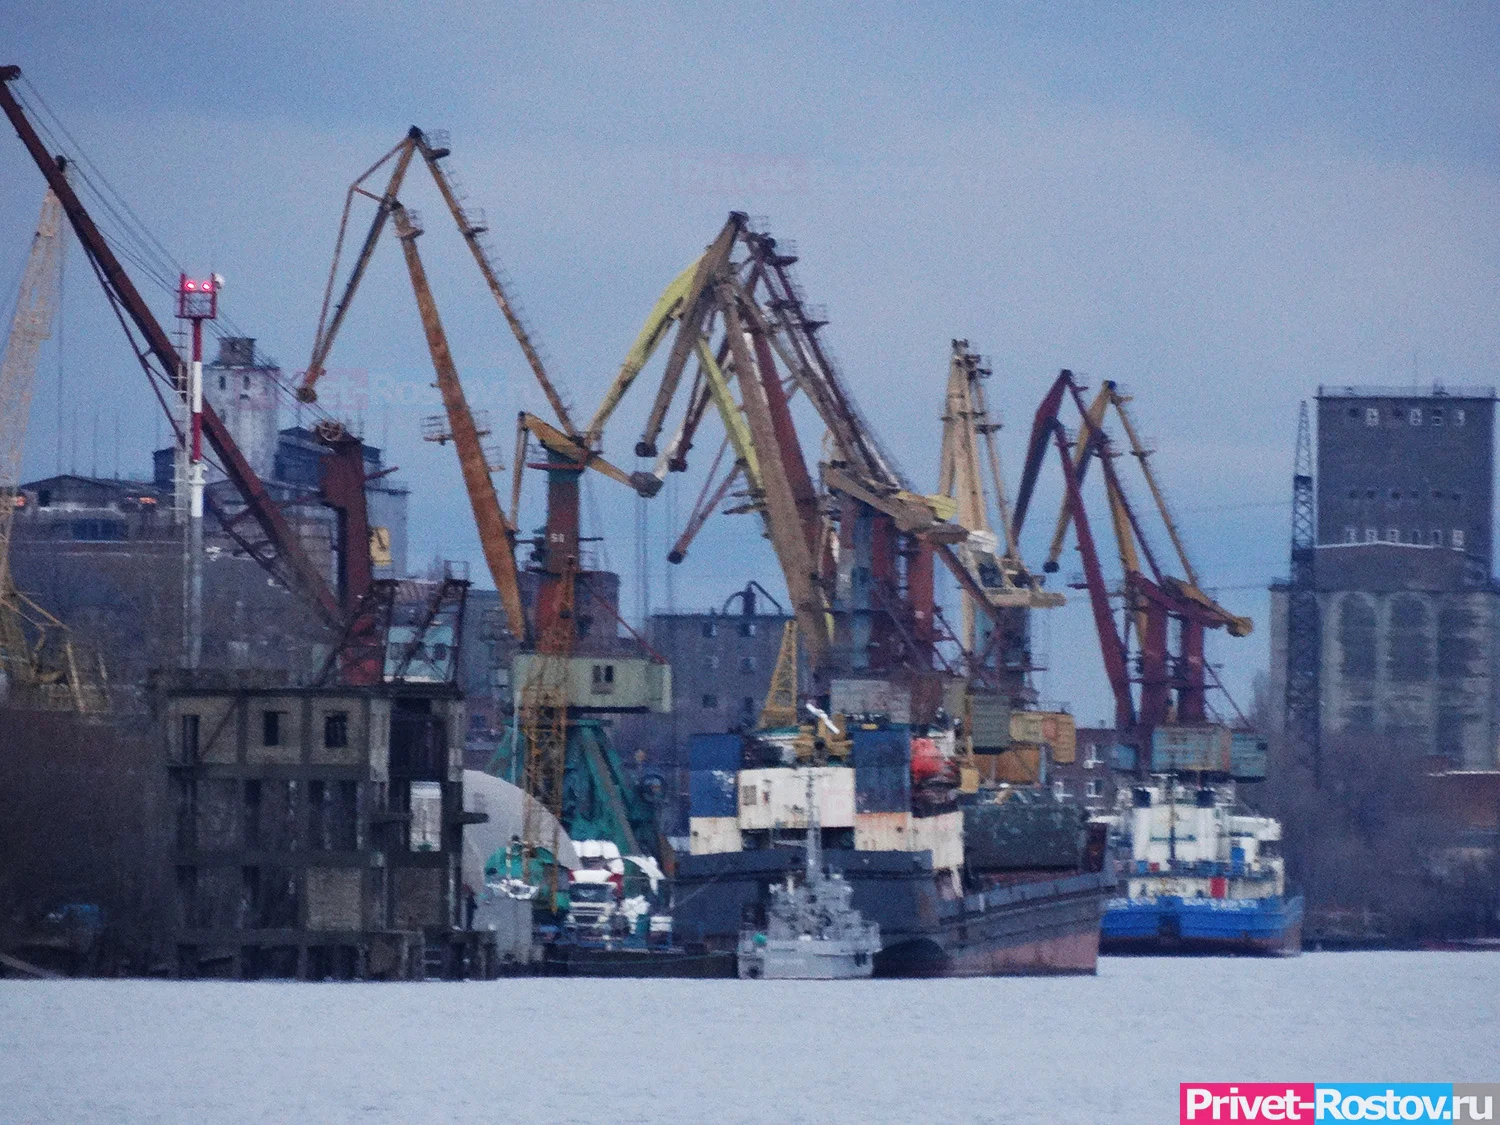 Ростовские таможенники обнаружили лишние емкости с топливом на борту турецкого судна